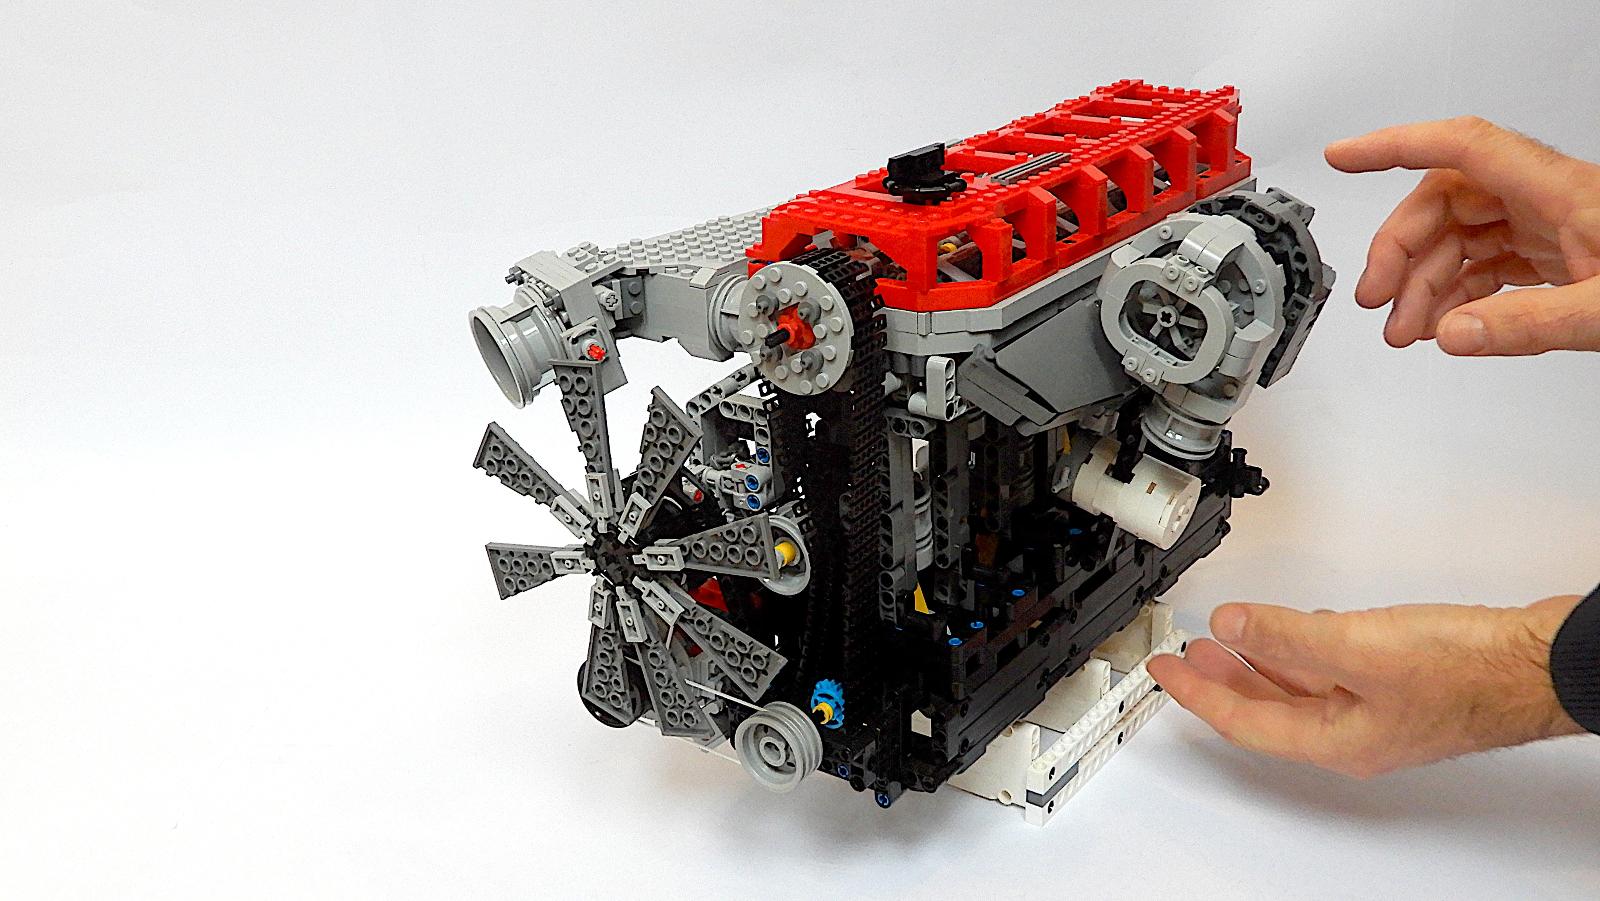 RB-30 Six-Cylinder Gasoline Engine (stavebnica kompatibilná s Lego) - Deti